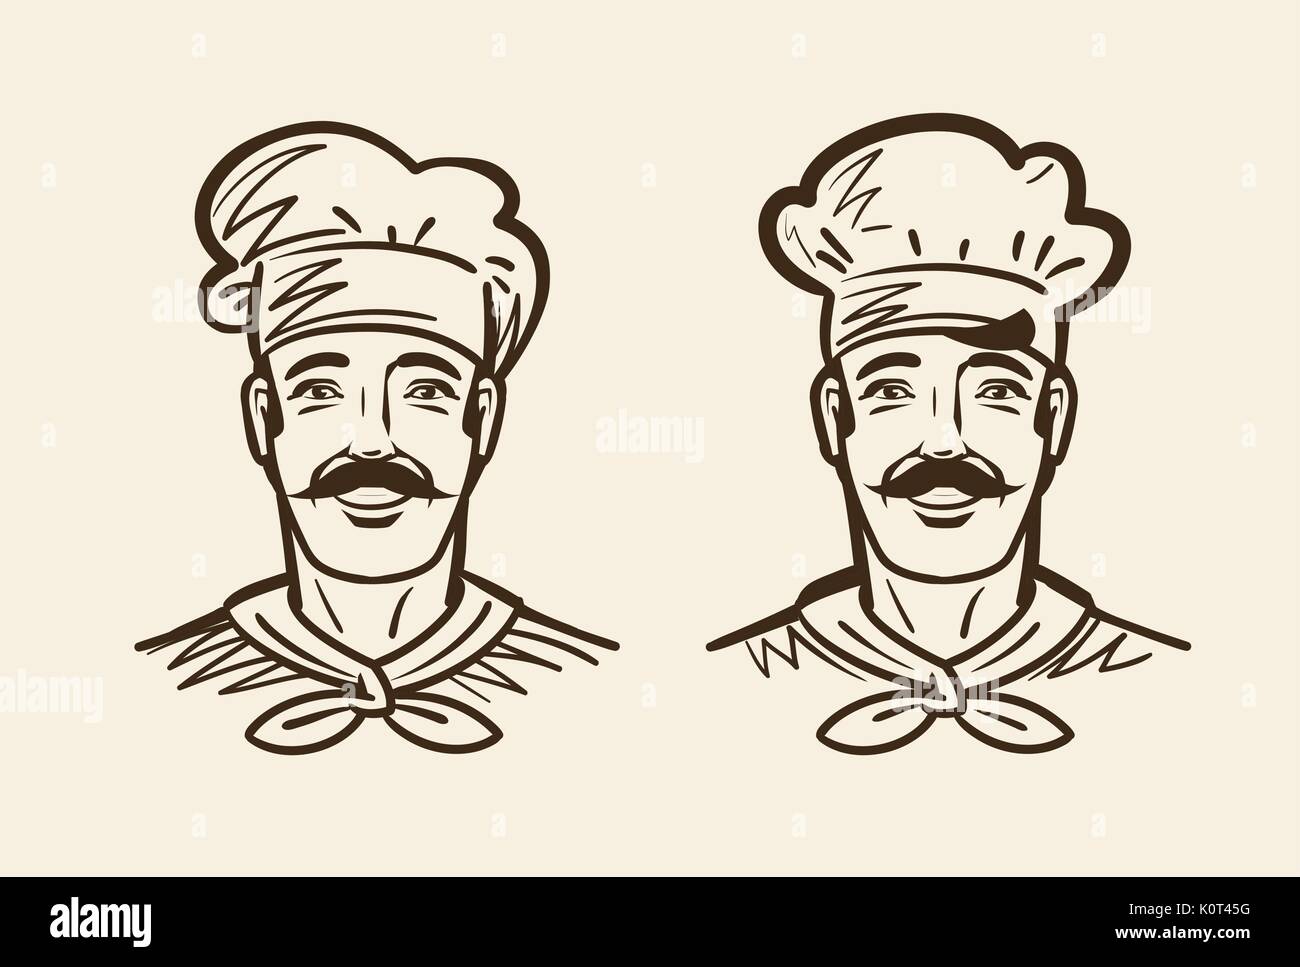 Portrait von Happy Chef, Kochen. Vintage Vektor-illustration Skizze Stock Vektor